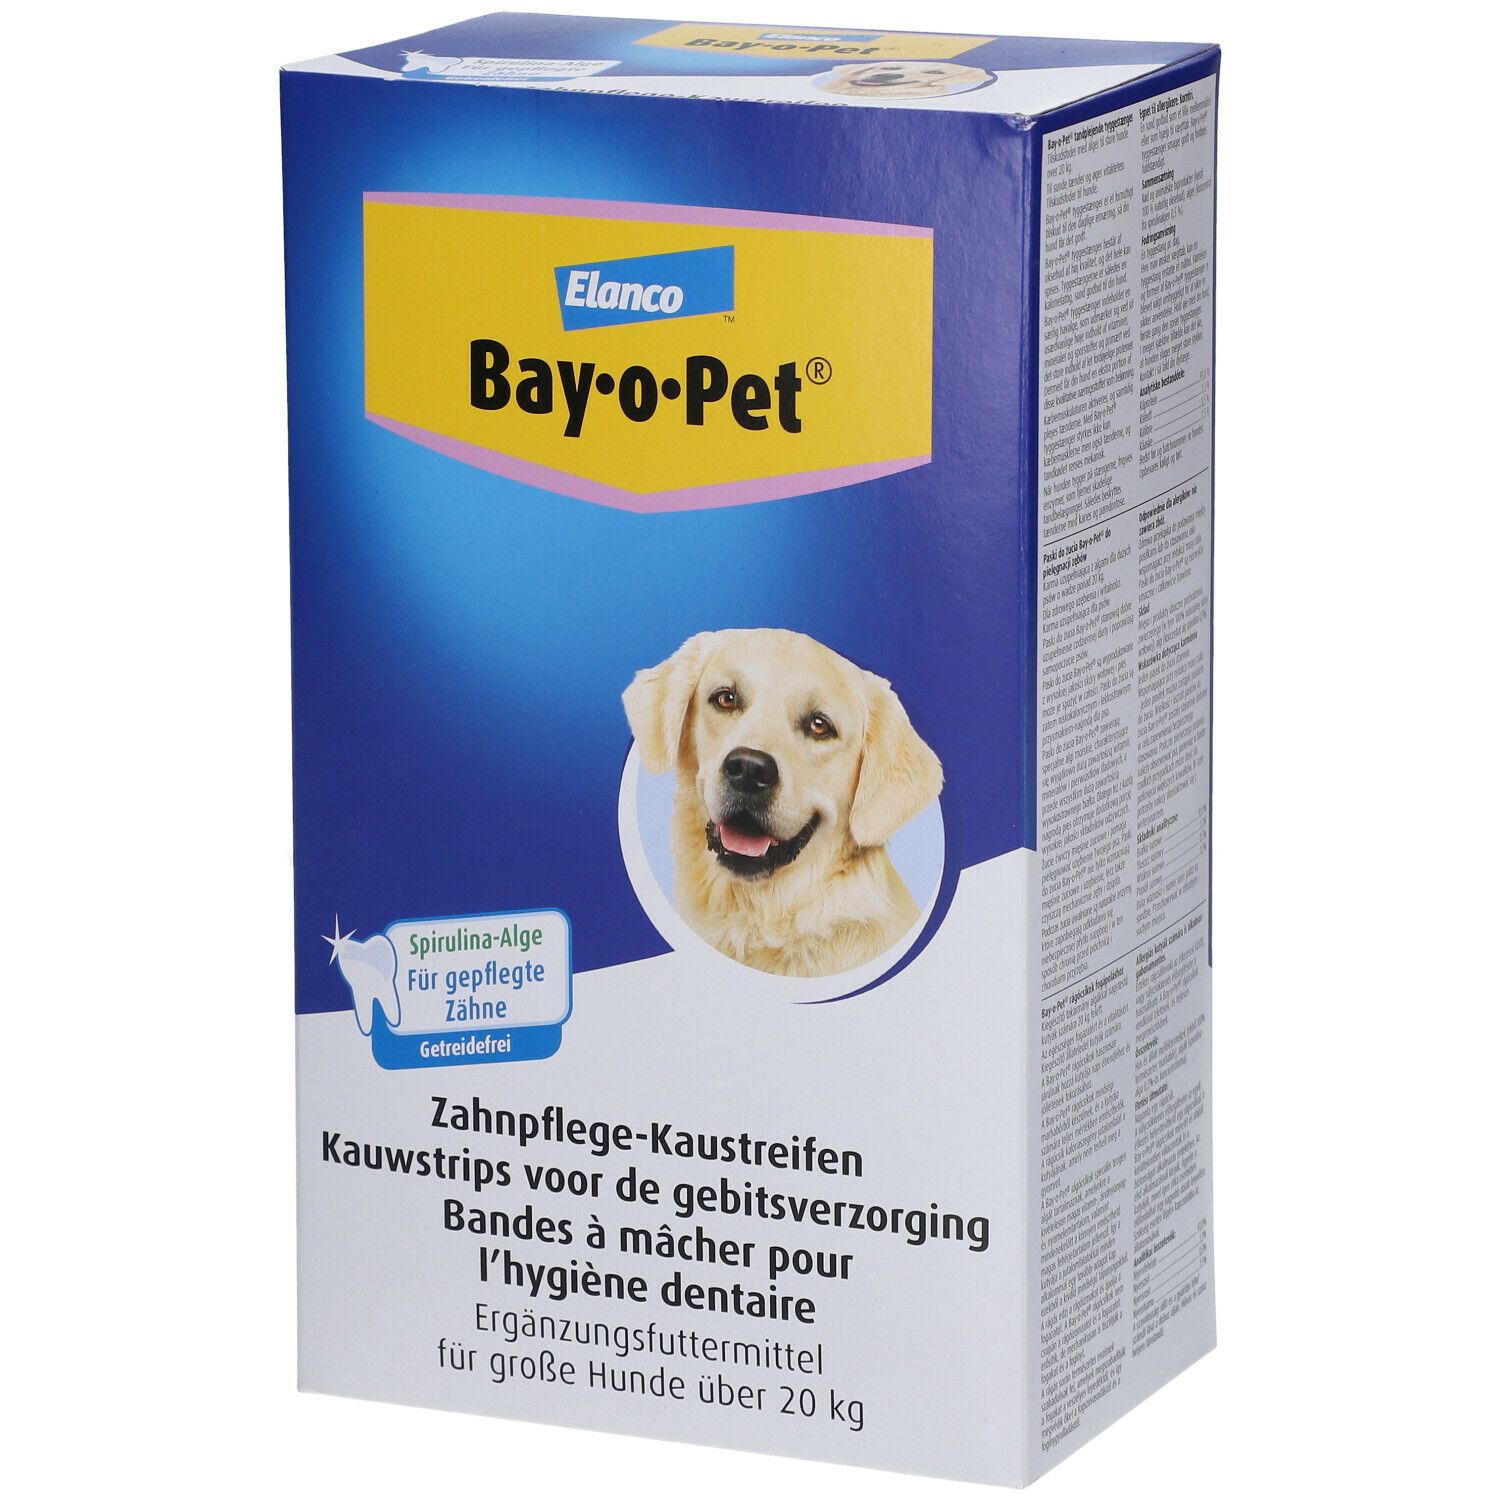 Bay-o-Pet® Bandes à mâcher soins dentaires à base d'algues pour grands chiens